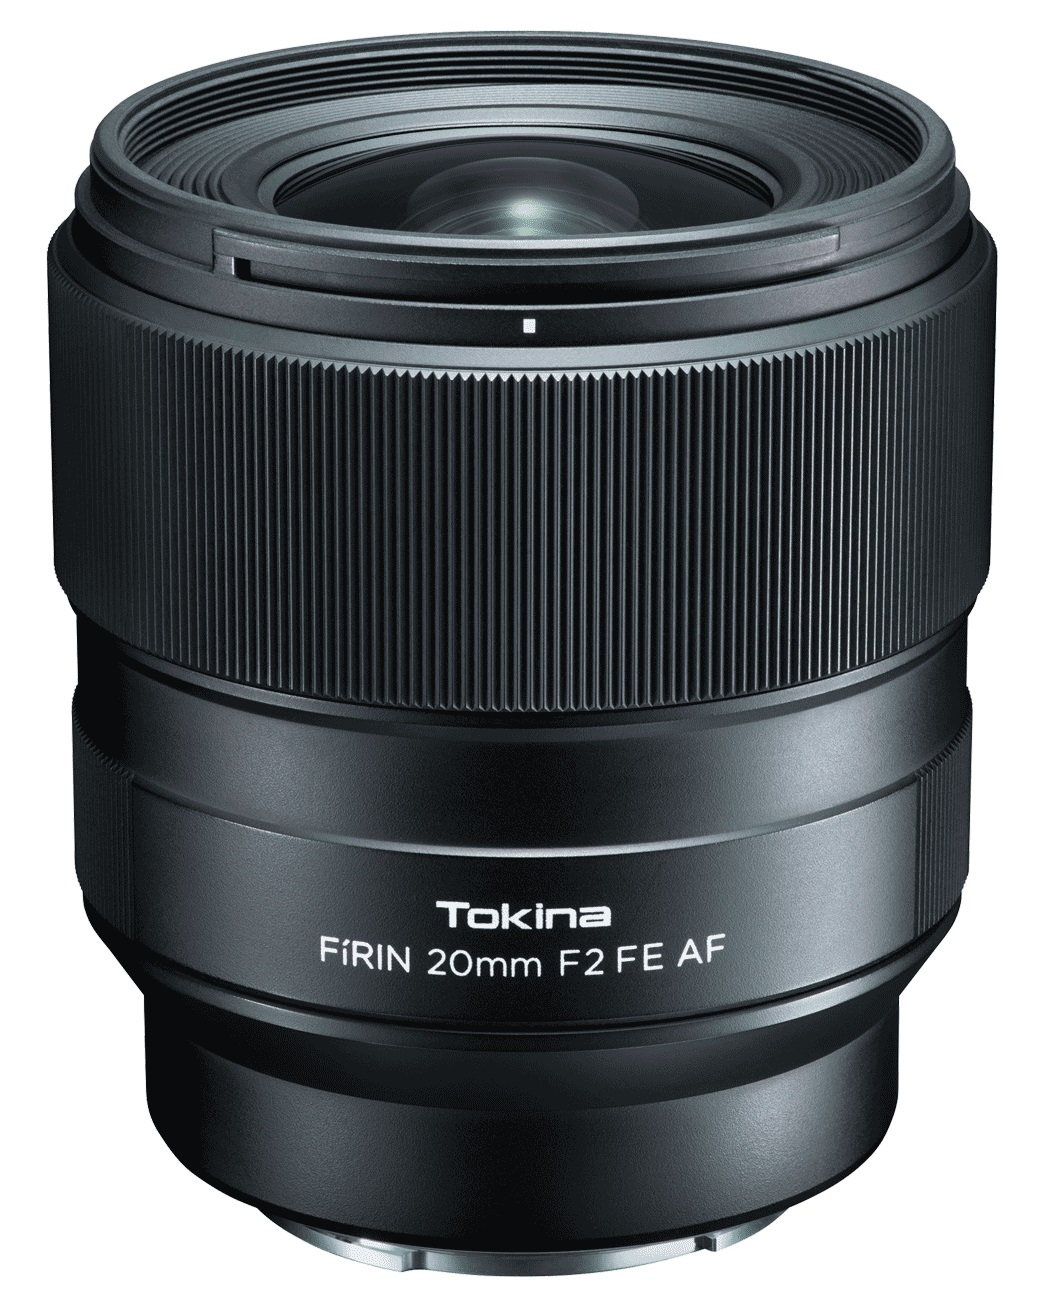 Объектив Tokina FIRIN 20mm F2 FE AF для Sony автофокус sigma af 35mm f 1 4 dg hsm art sony e